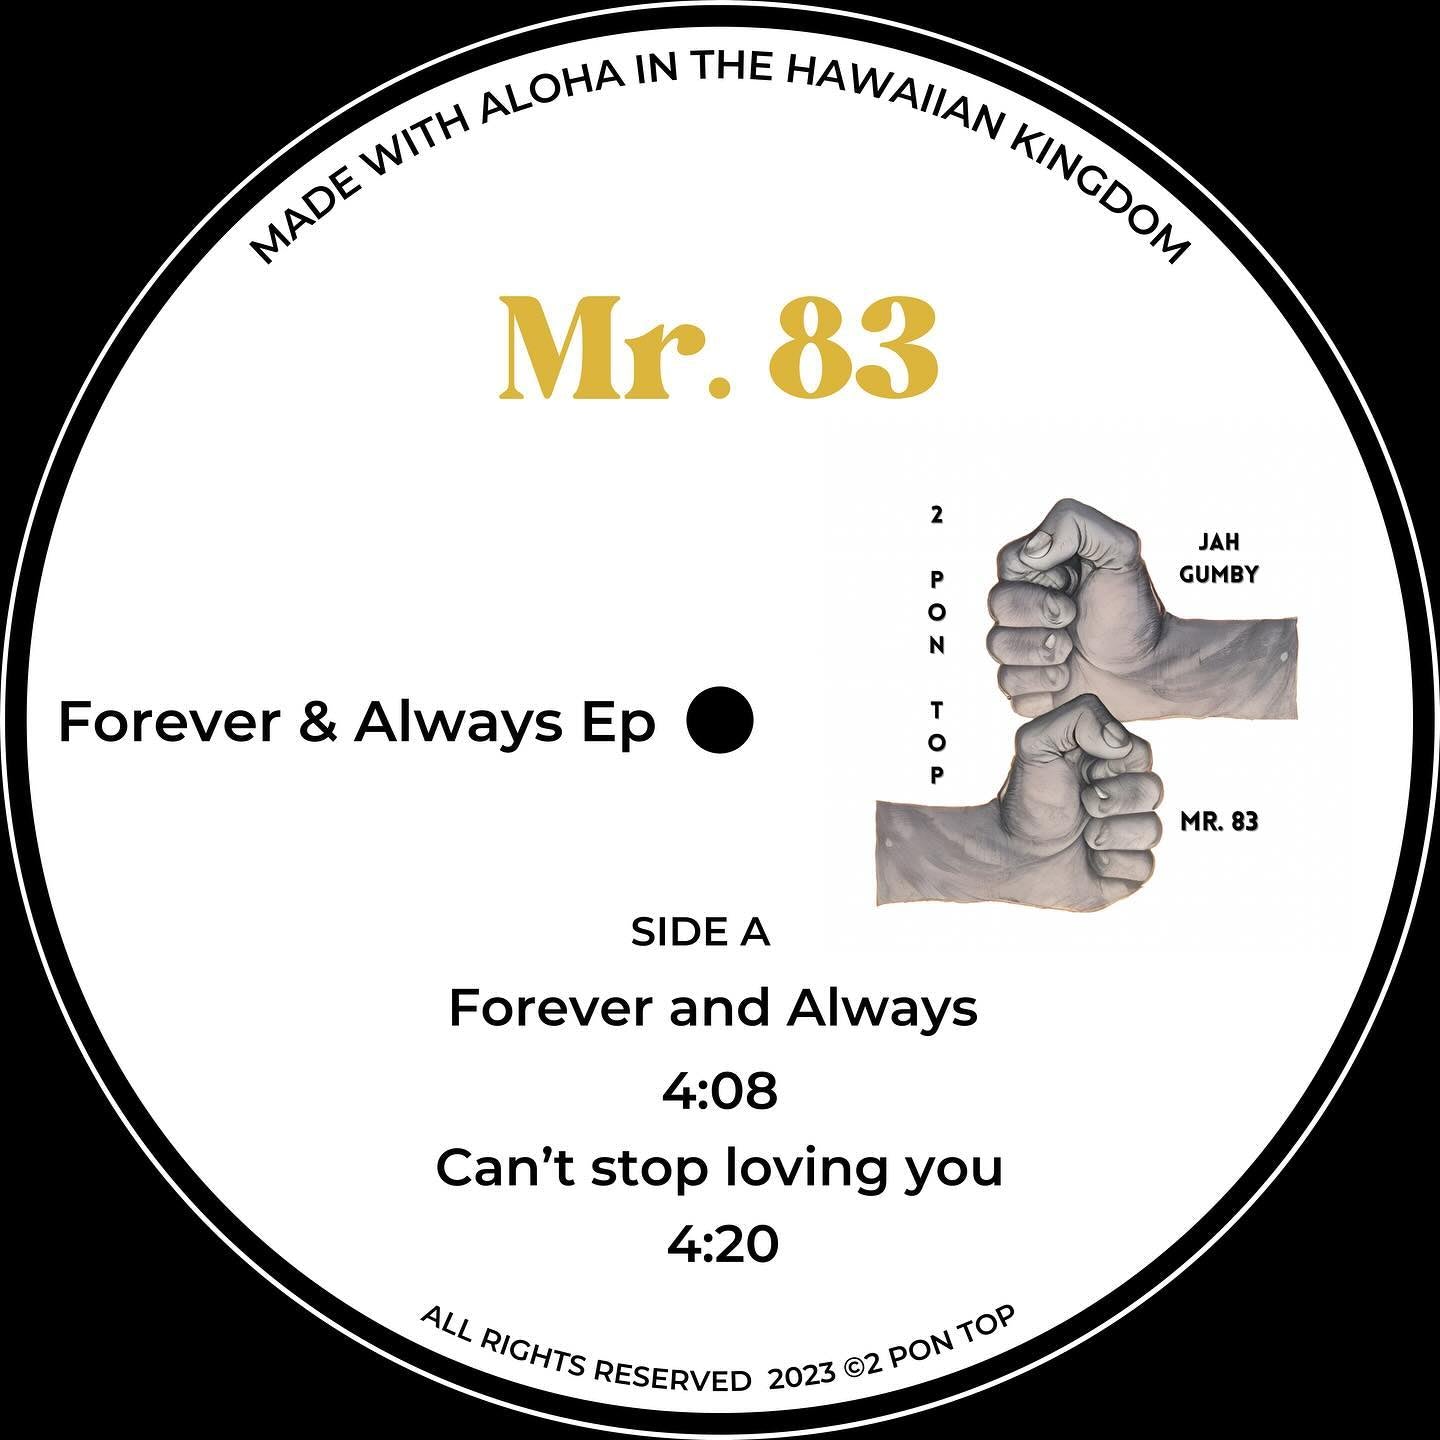 Mr.83 - Forever & Always EP